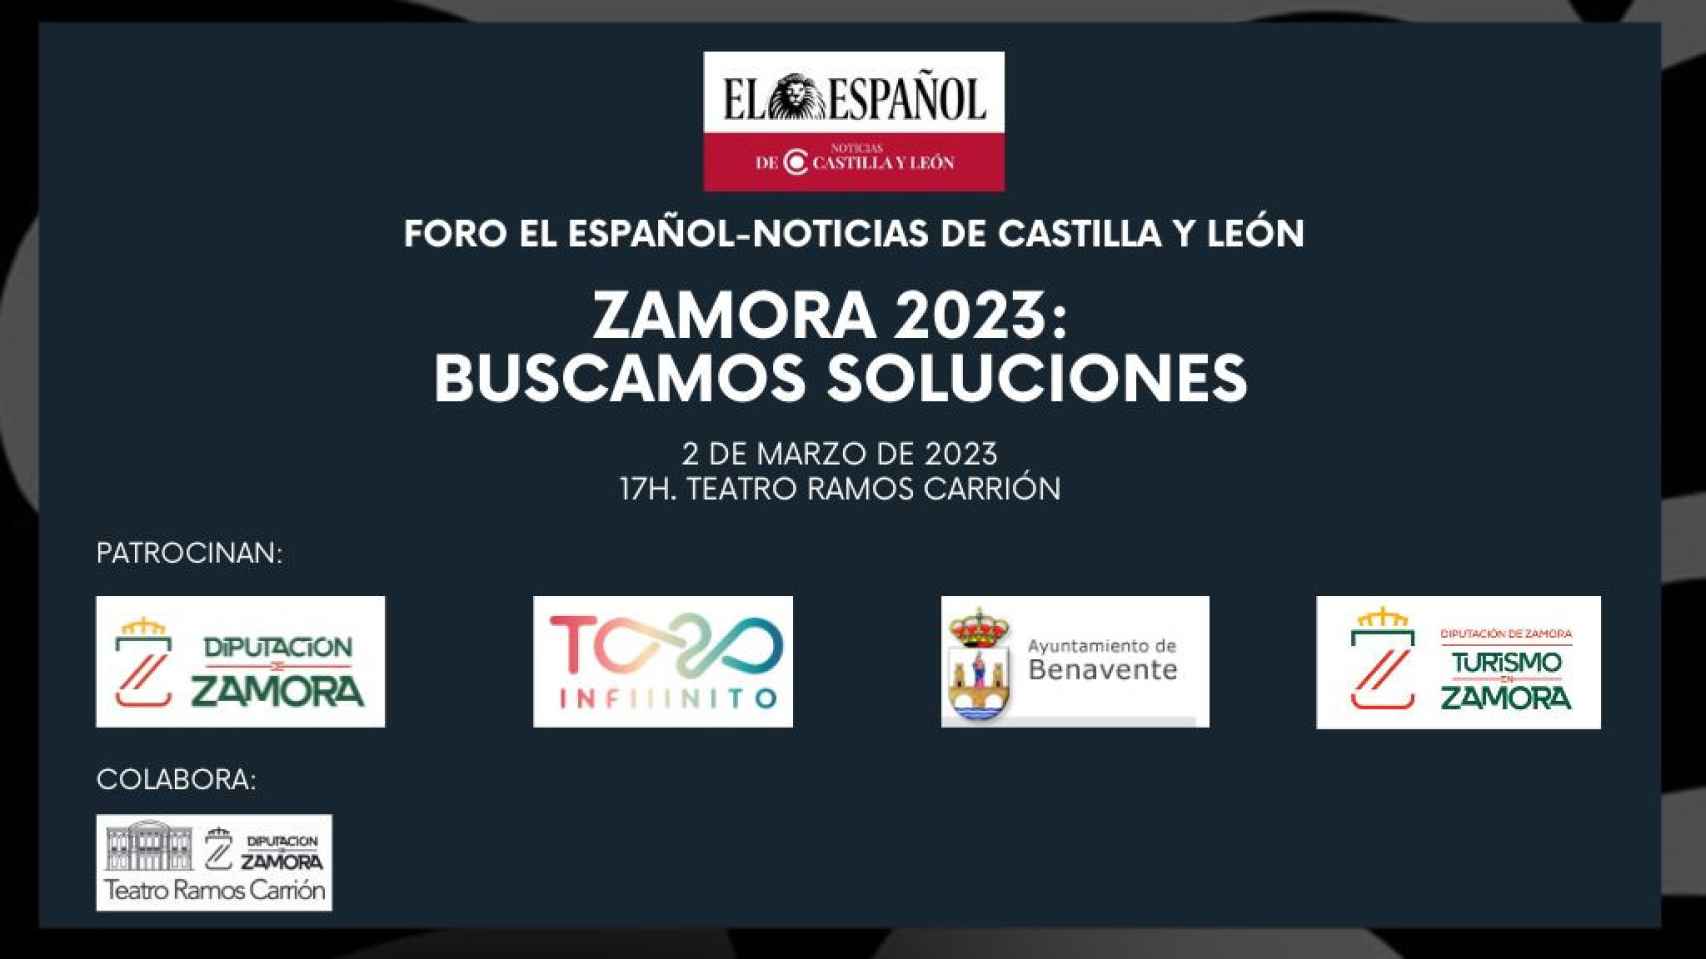 Cartel de patrocinadores del foro 'Zamora 2023: buscamos soluciones' organizado por EL ESPAÑOL - Noticias de Castilla y León